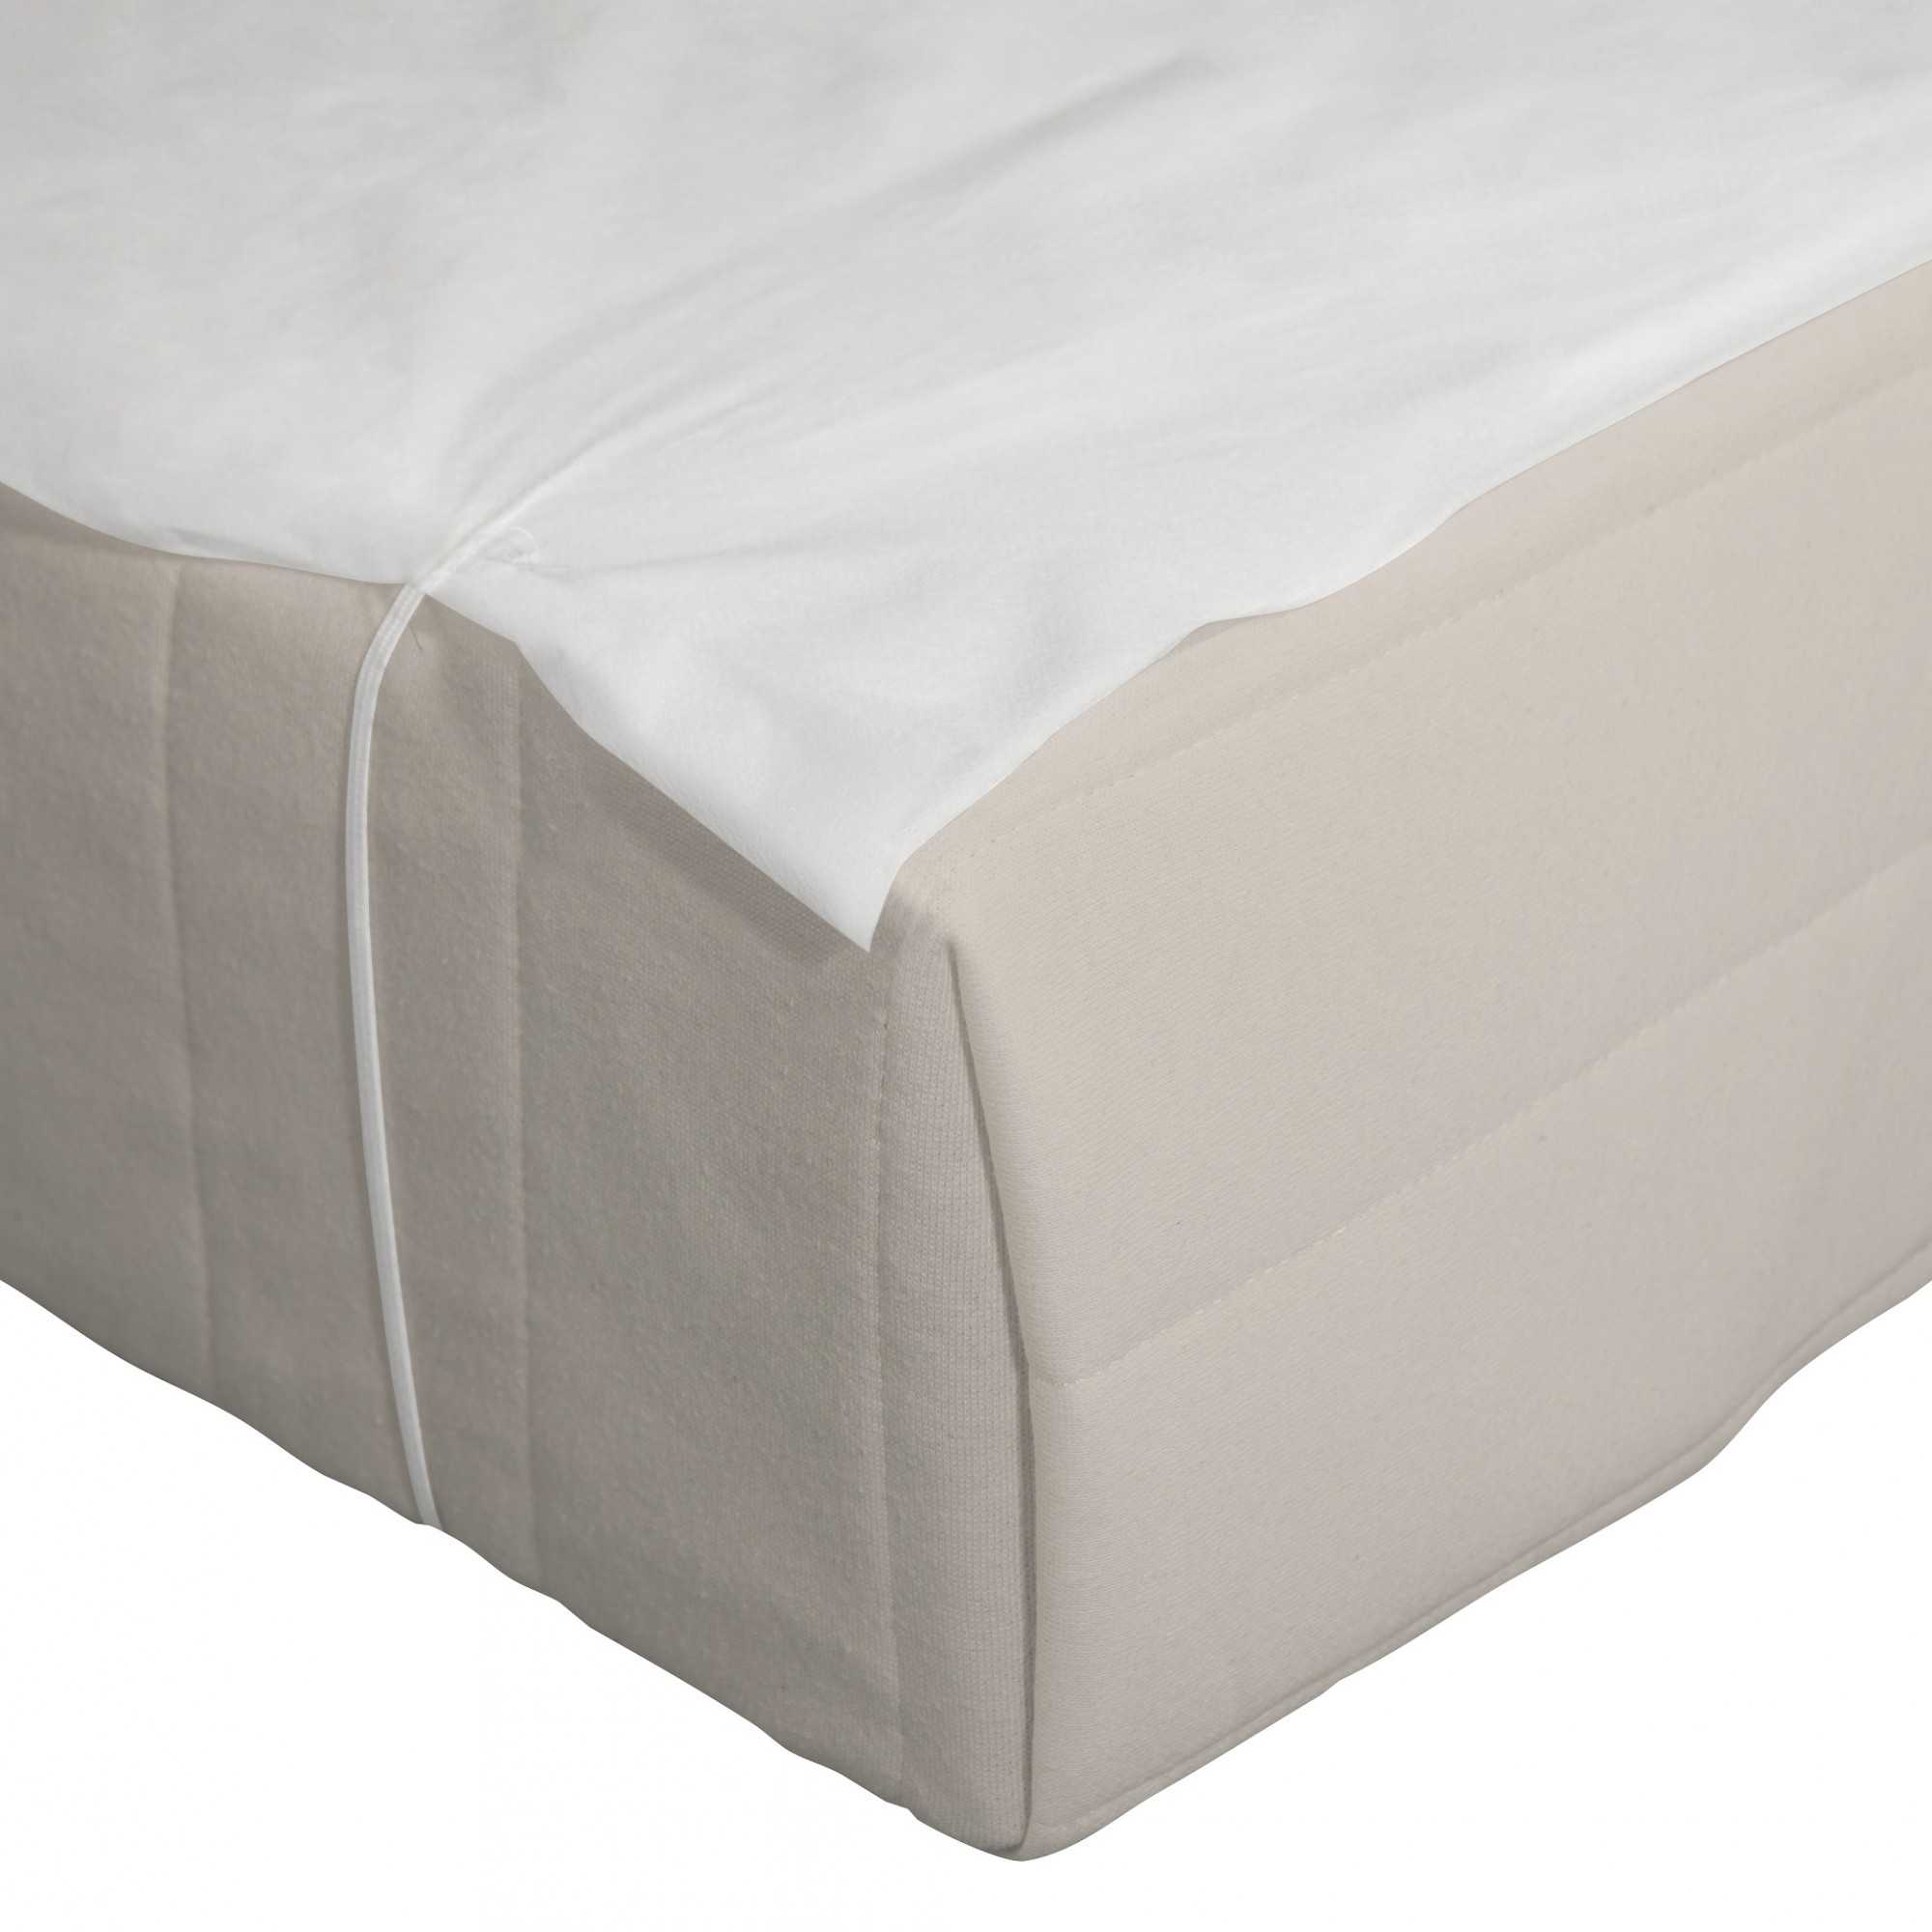 Esta funda de colchón impermeable es hipoalergénica y silenciosa - Showroom